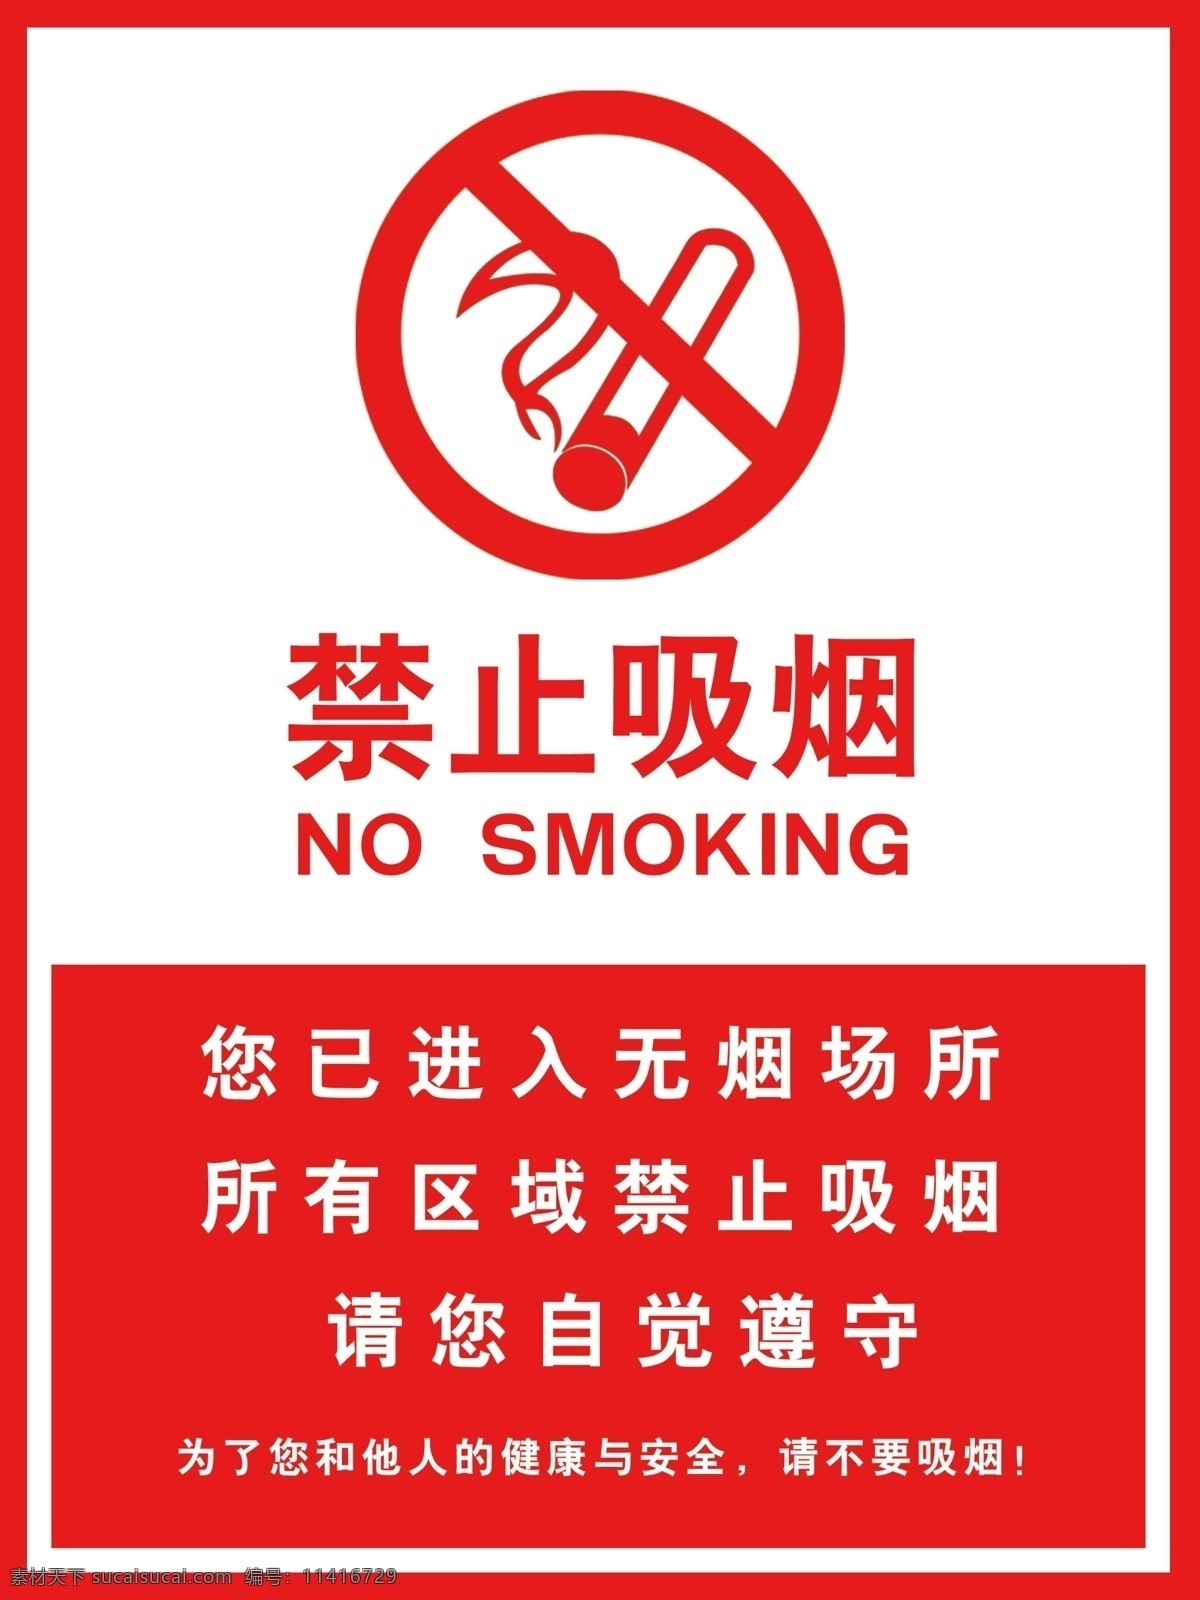 禁止吸烟 吸烟图标 进入无烟单位 温馨提示 无烟区域 吸烟有害健康 红色 分层